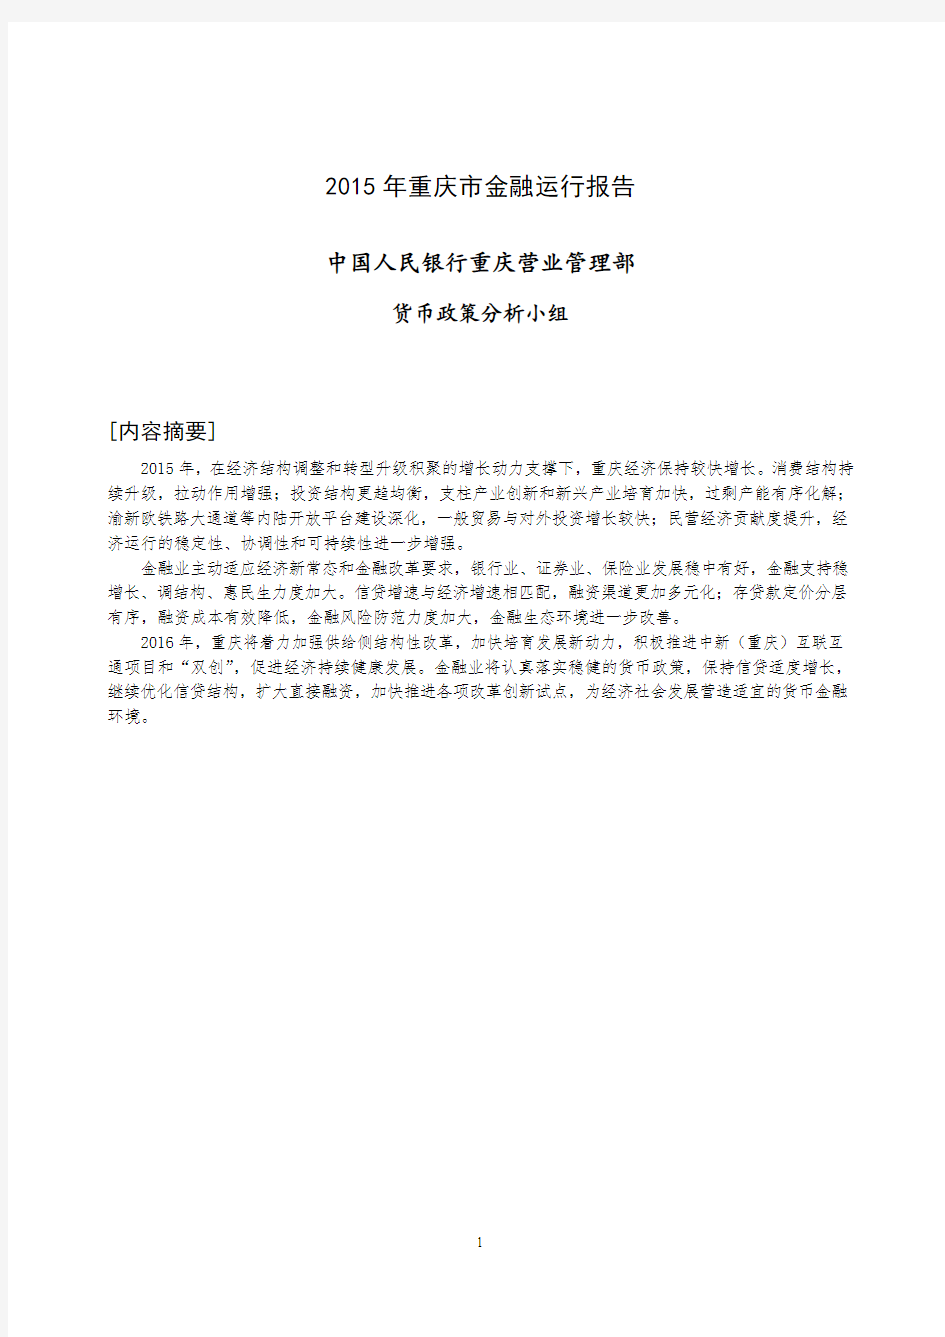 2015年重庆市金融运行报告